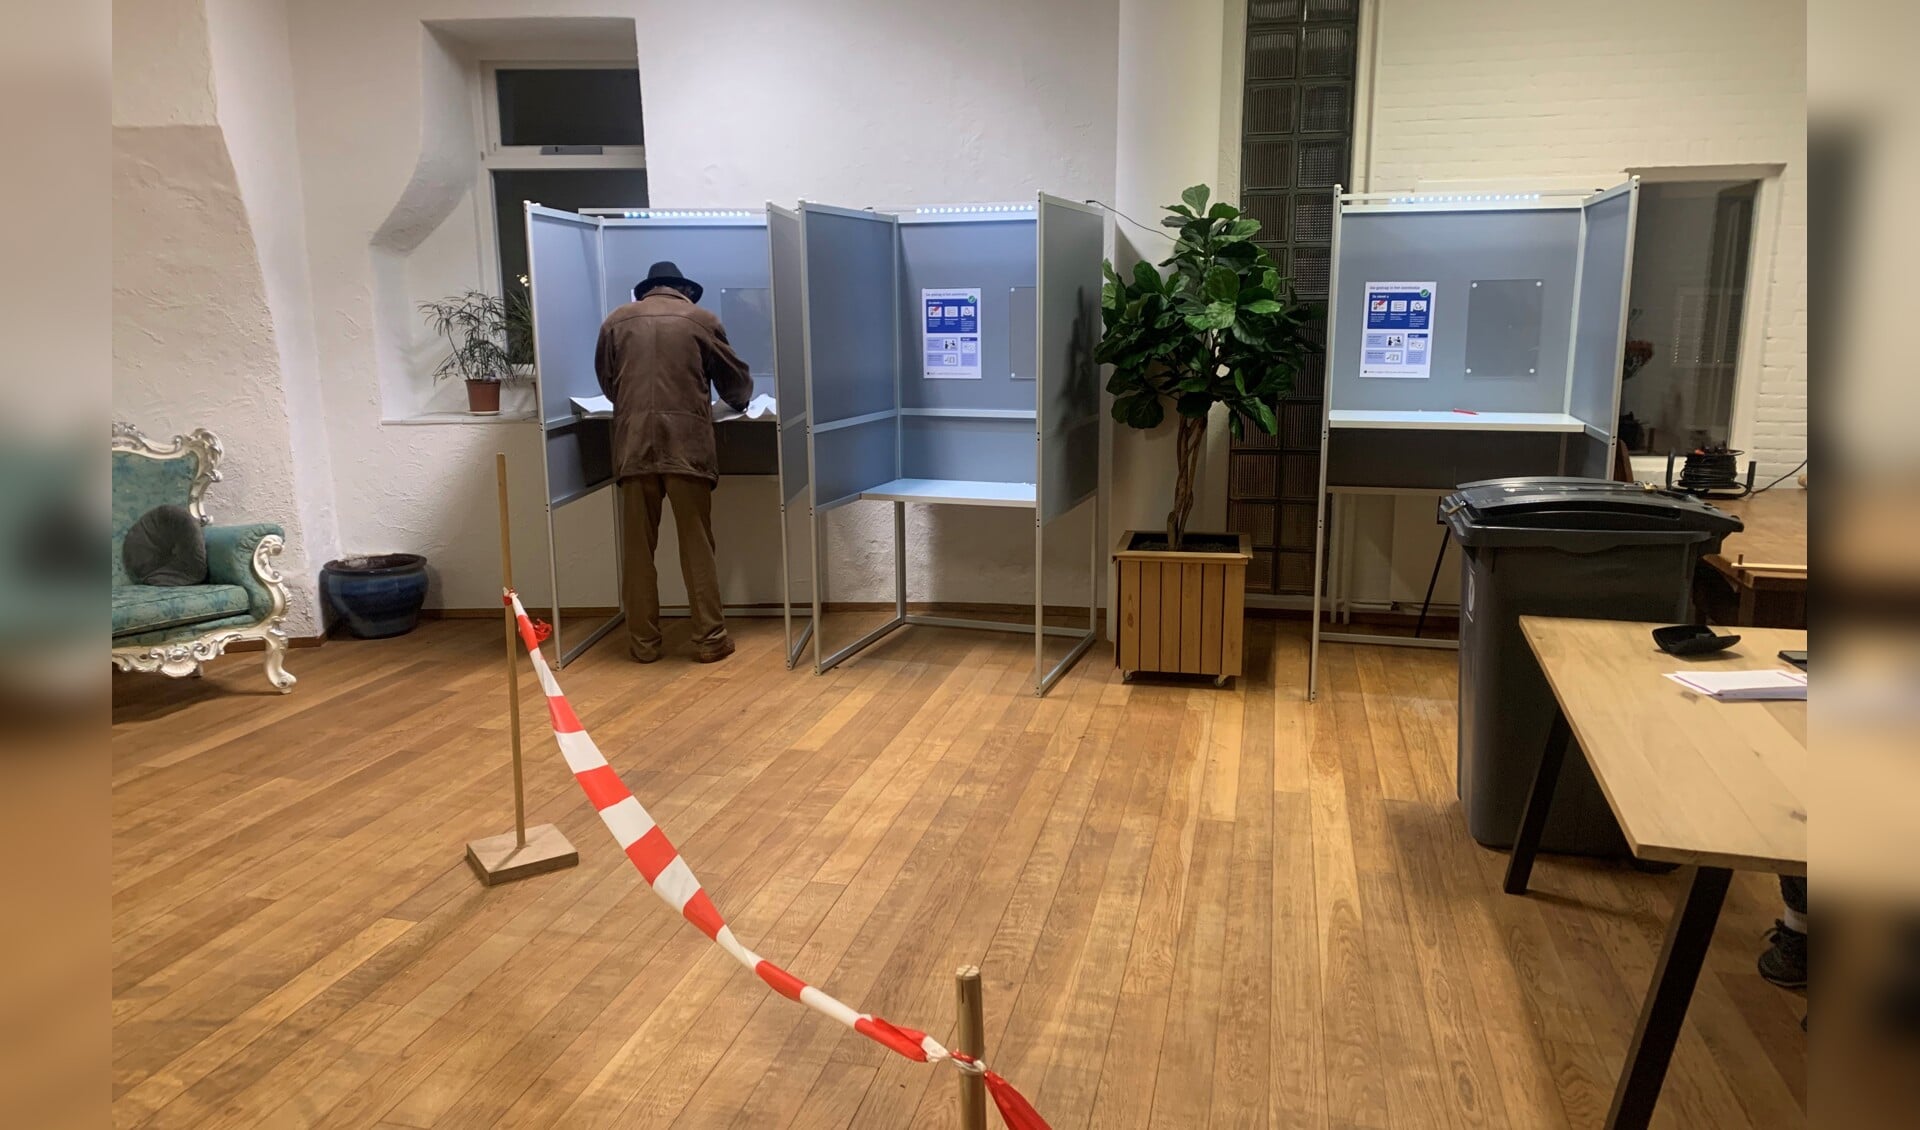 Deze foto werd gemaakt in het stemlokaal van verzorgingscentrum Sint-Elisabeth in Zutphen. De allerlaatste kiezer. Hierna begon het tellen van de stemmen. Foto: Sander Grootendorst